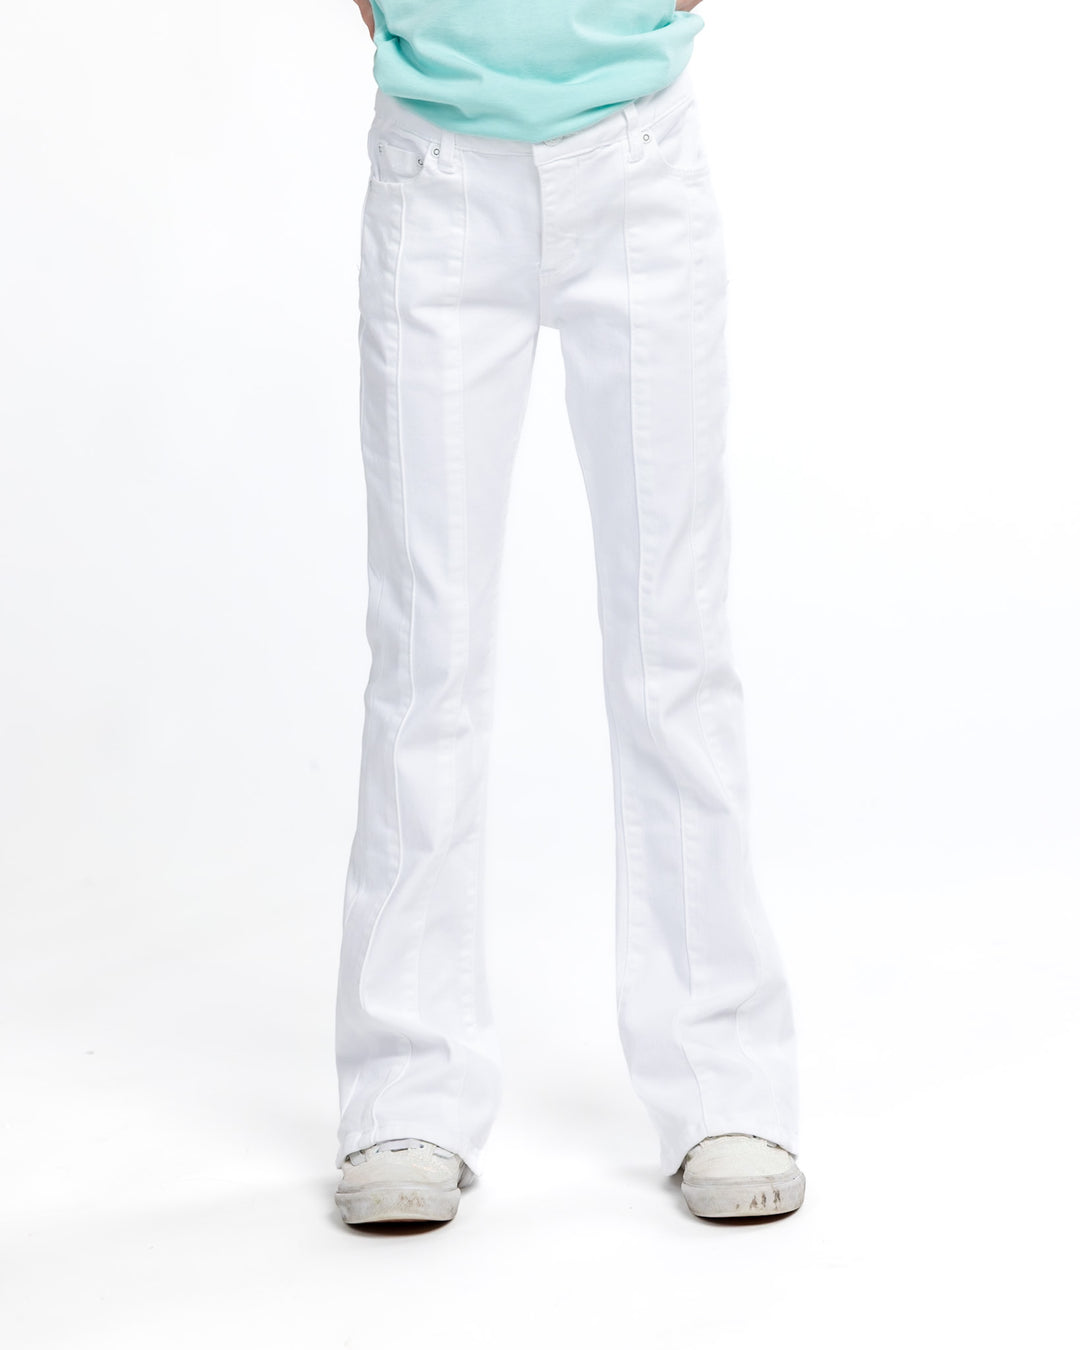 Girls Timeless White Denim Jeans